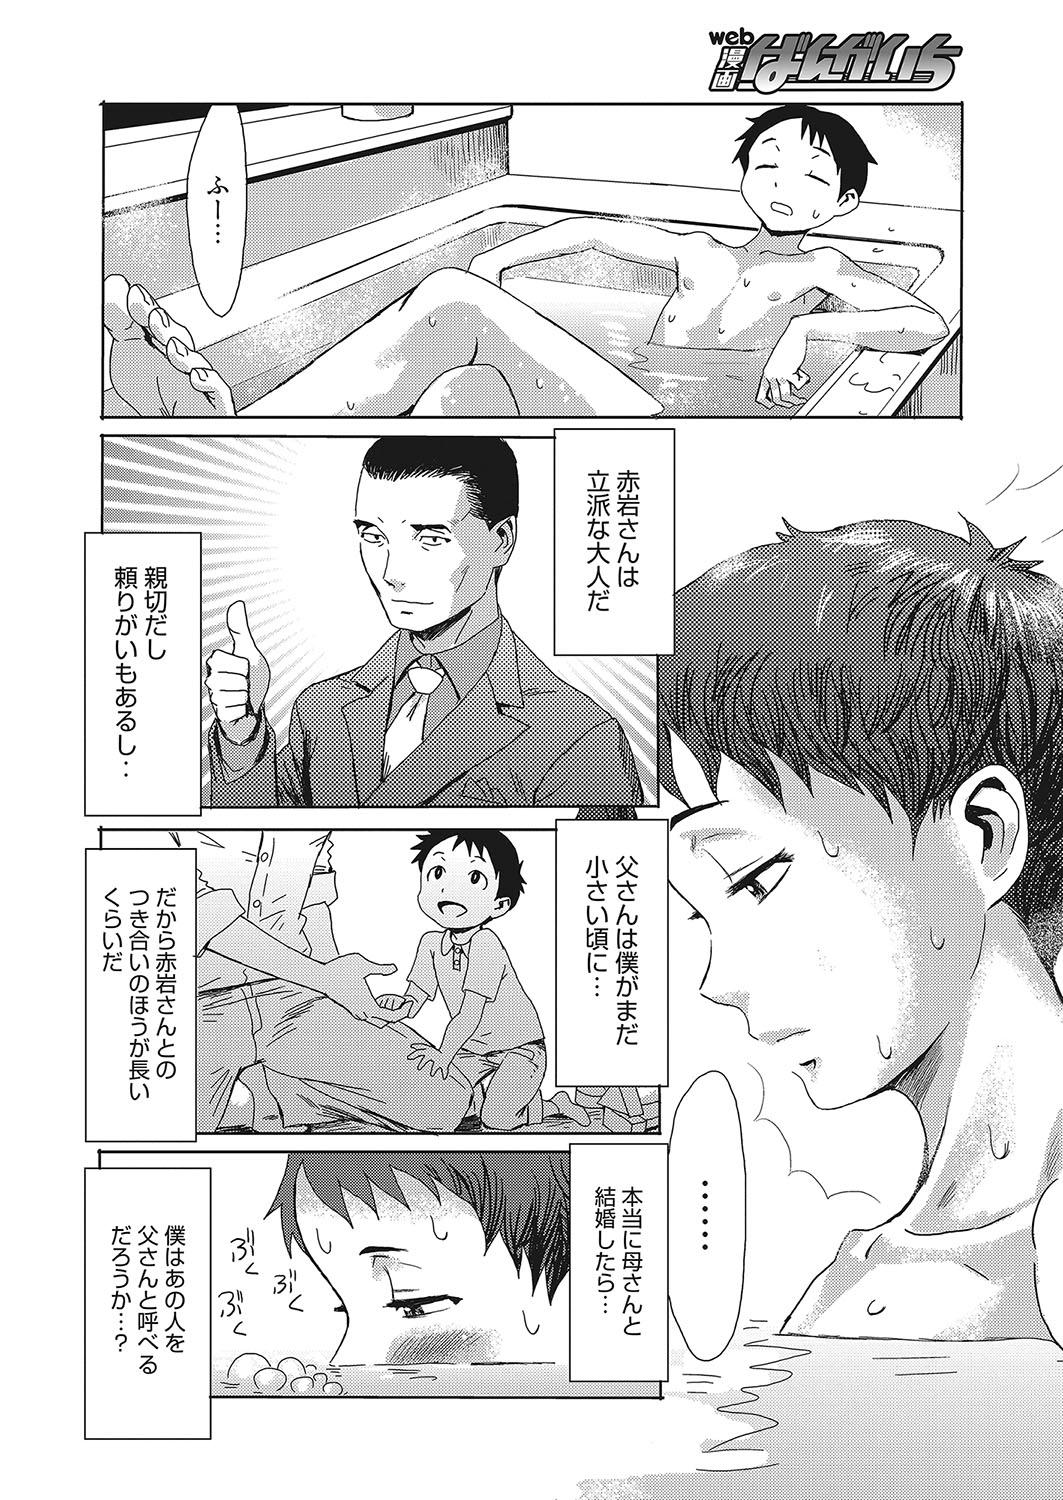 Yanks Featured Web Manga Bangaichi Vol. 12 Redbone - Page 5